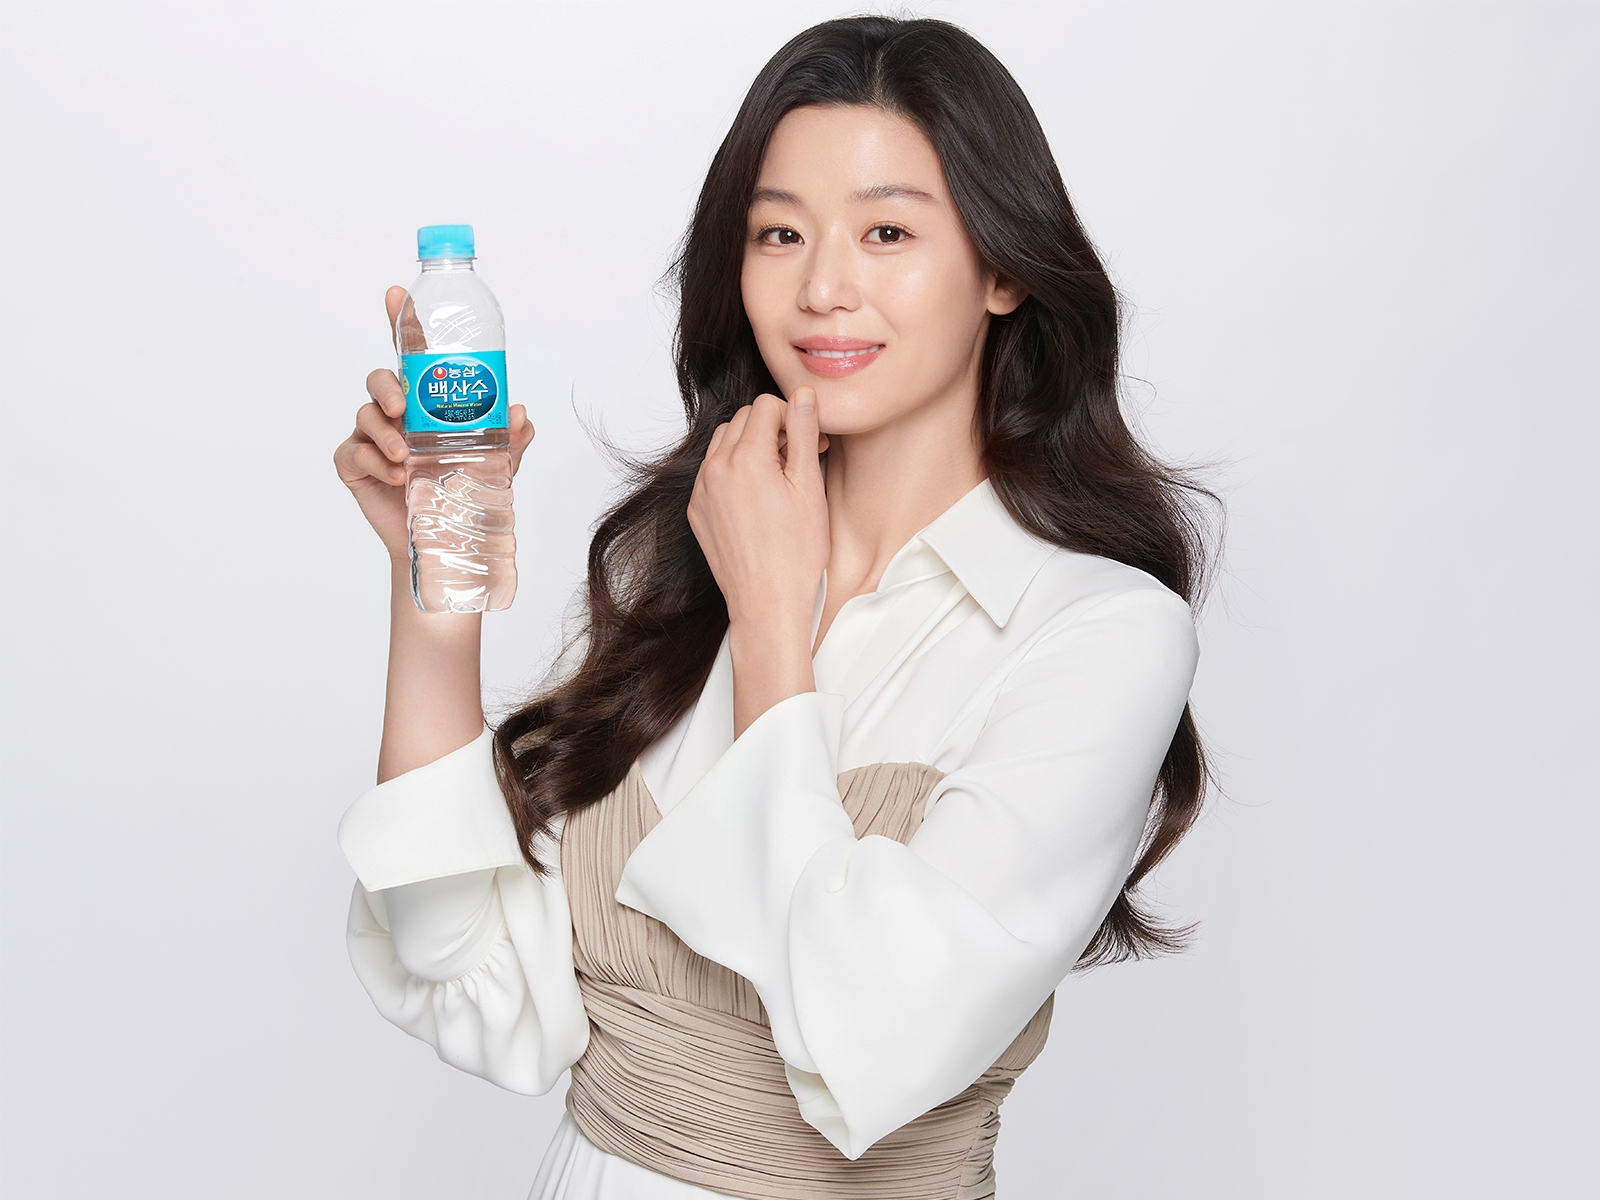 Jun Ji Hyun new brand ambassador of Baeksan Artesian Water